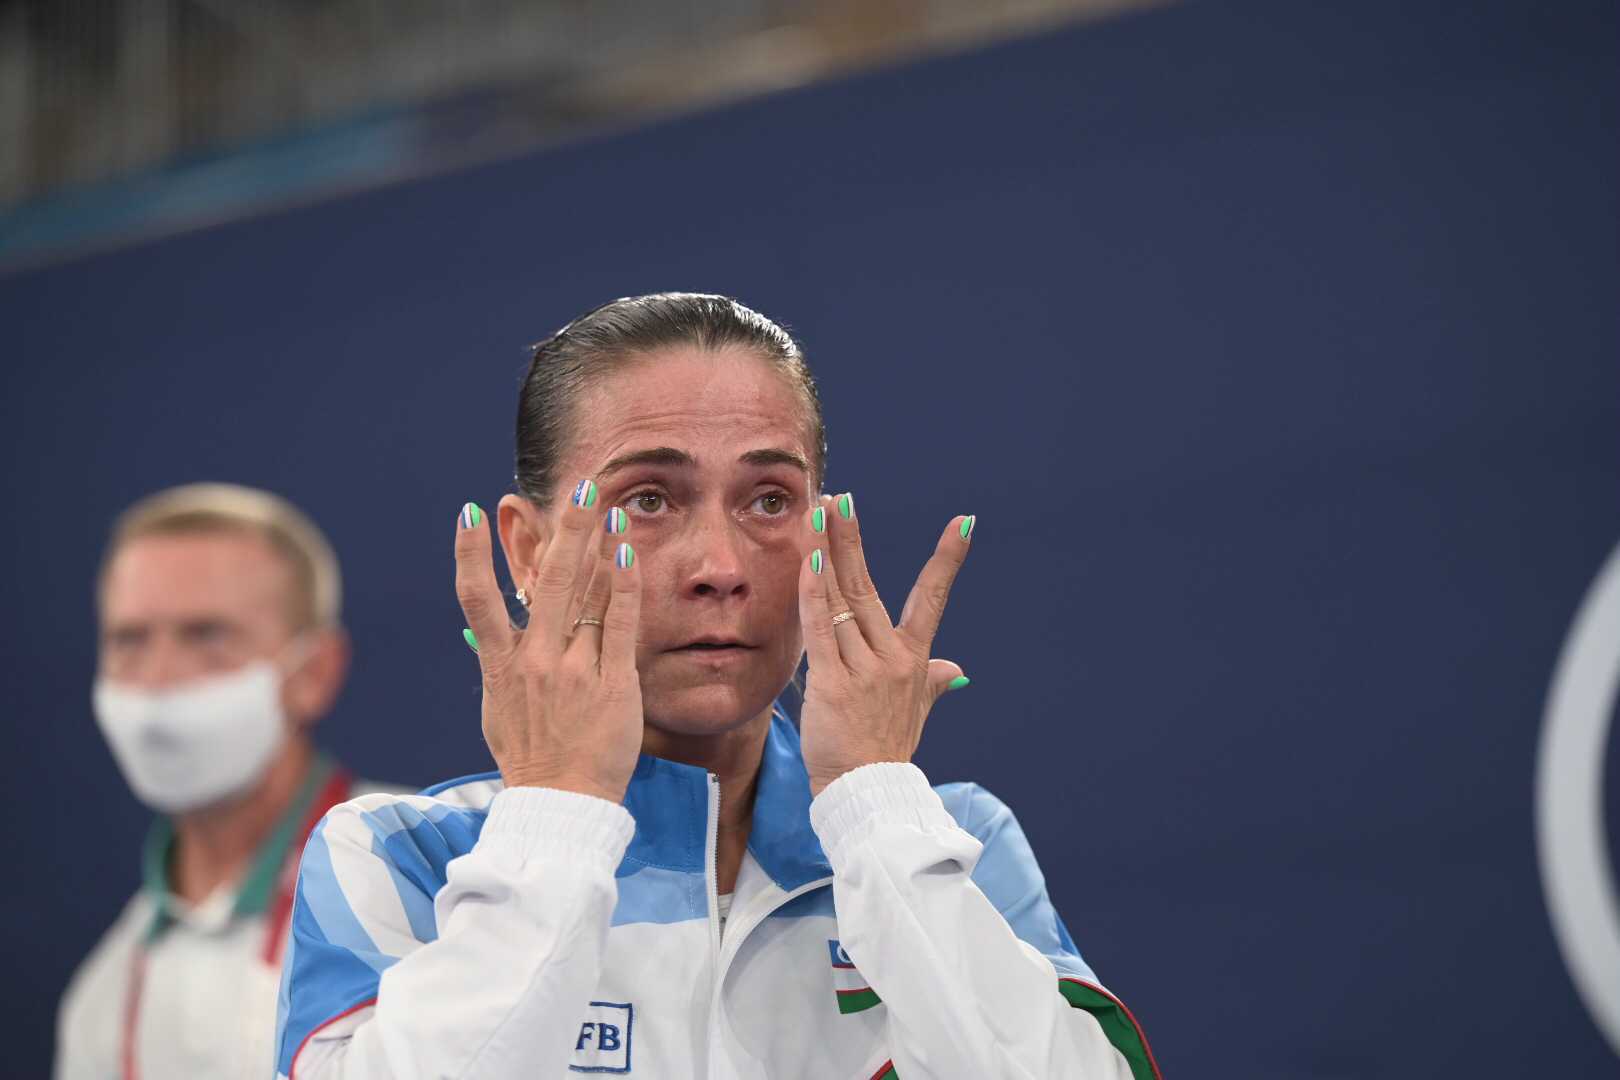 Moment emoționant la Jocurile Olimpice! Sportiva, de 46 de ani, ovaționată, a izbucnit în plâns. Reacția adversarelor